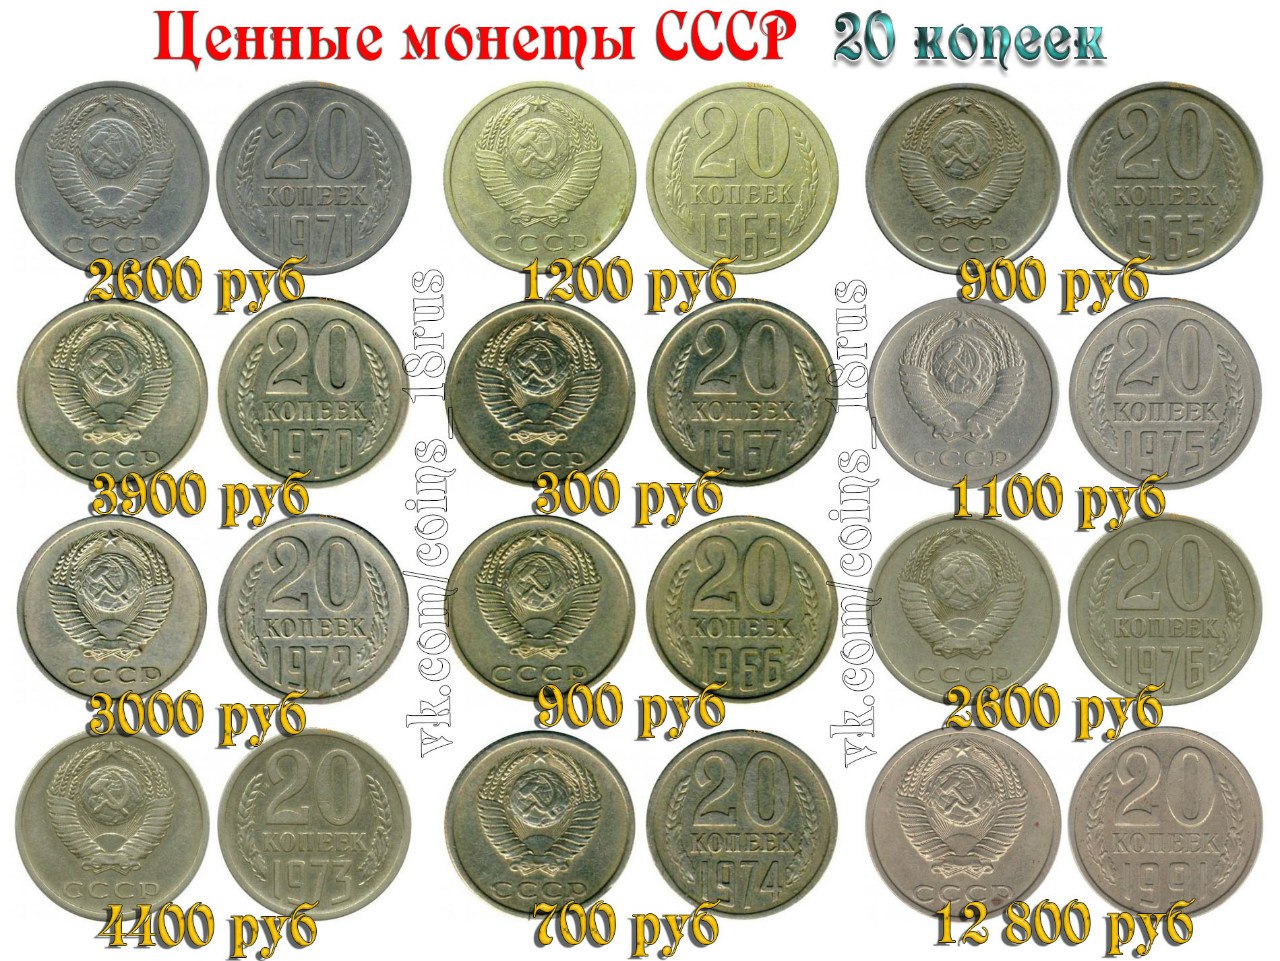 Ценные монеты СССР таблица